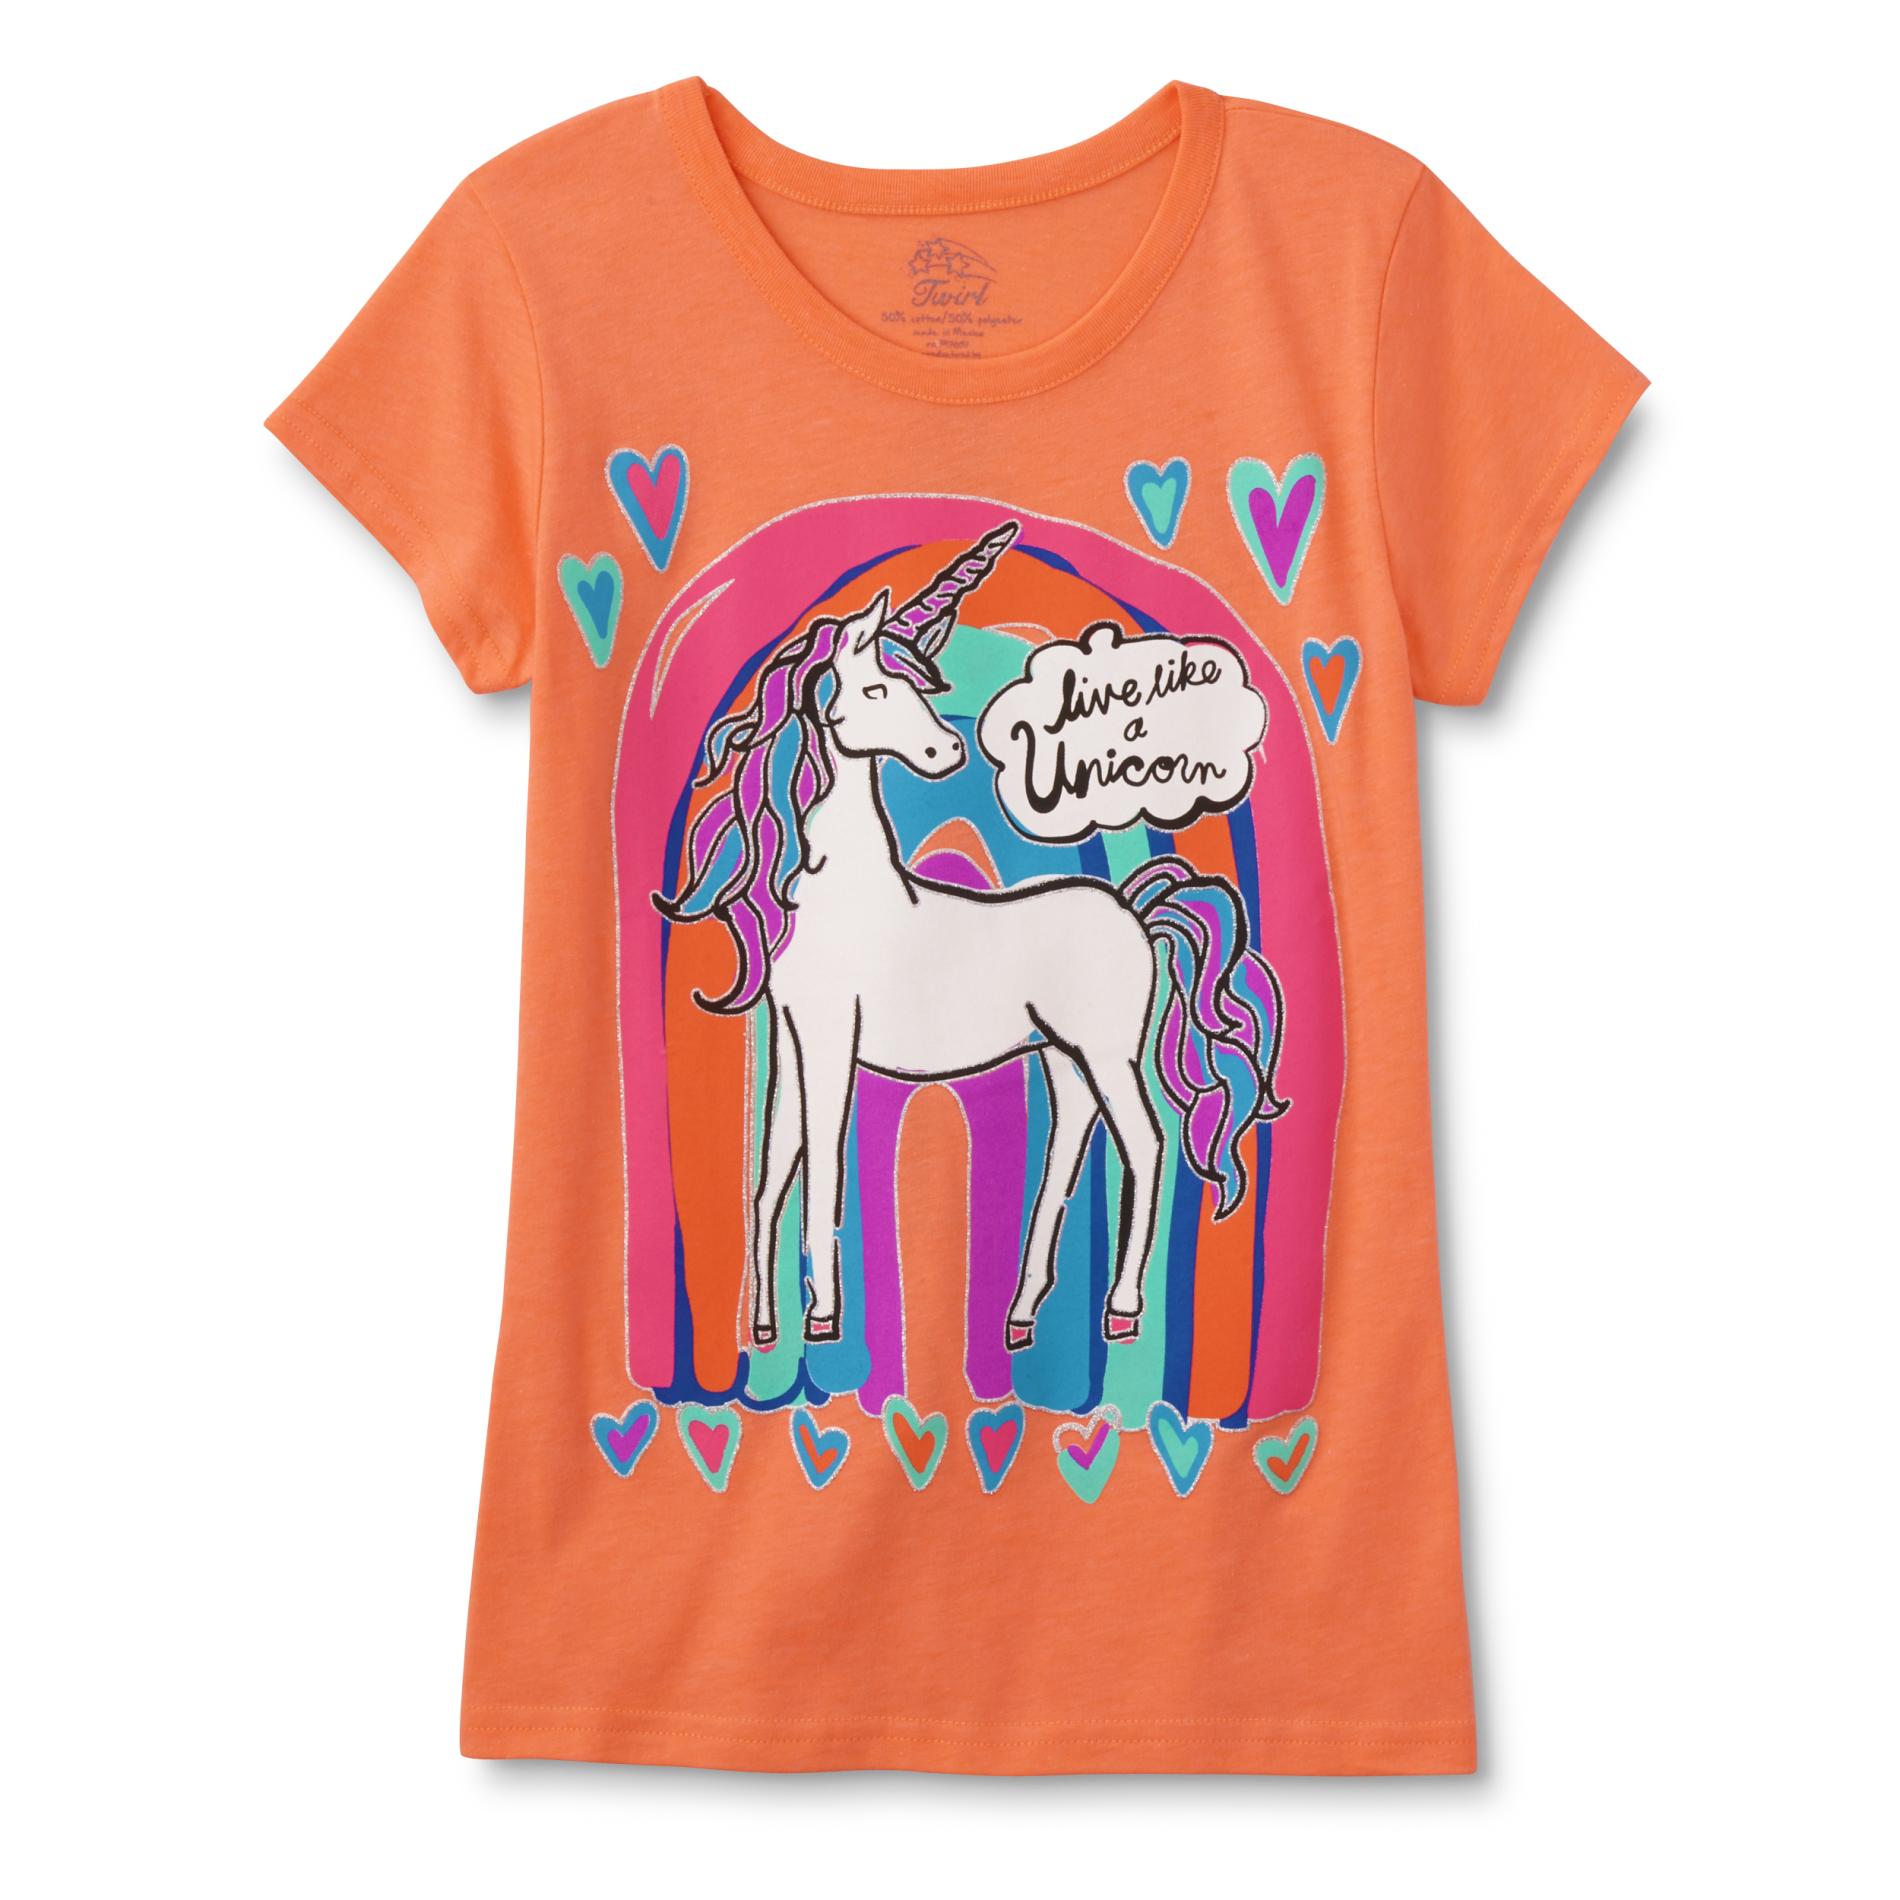 Route 66 Girls' Graphic T-Shirt - Unicorn